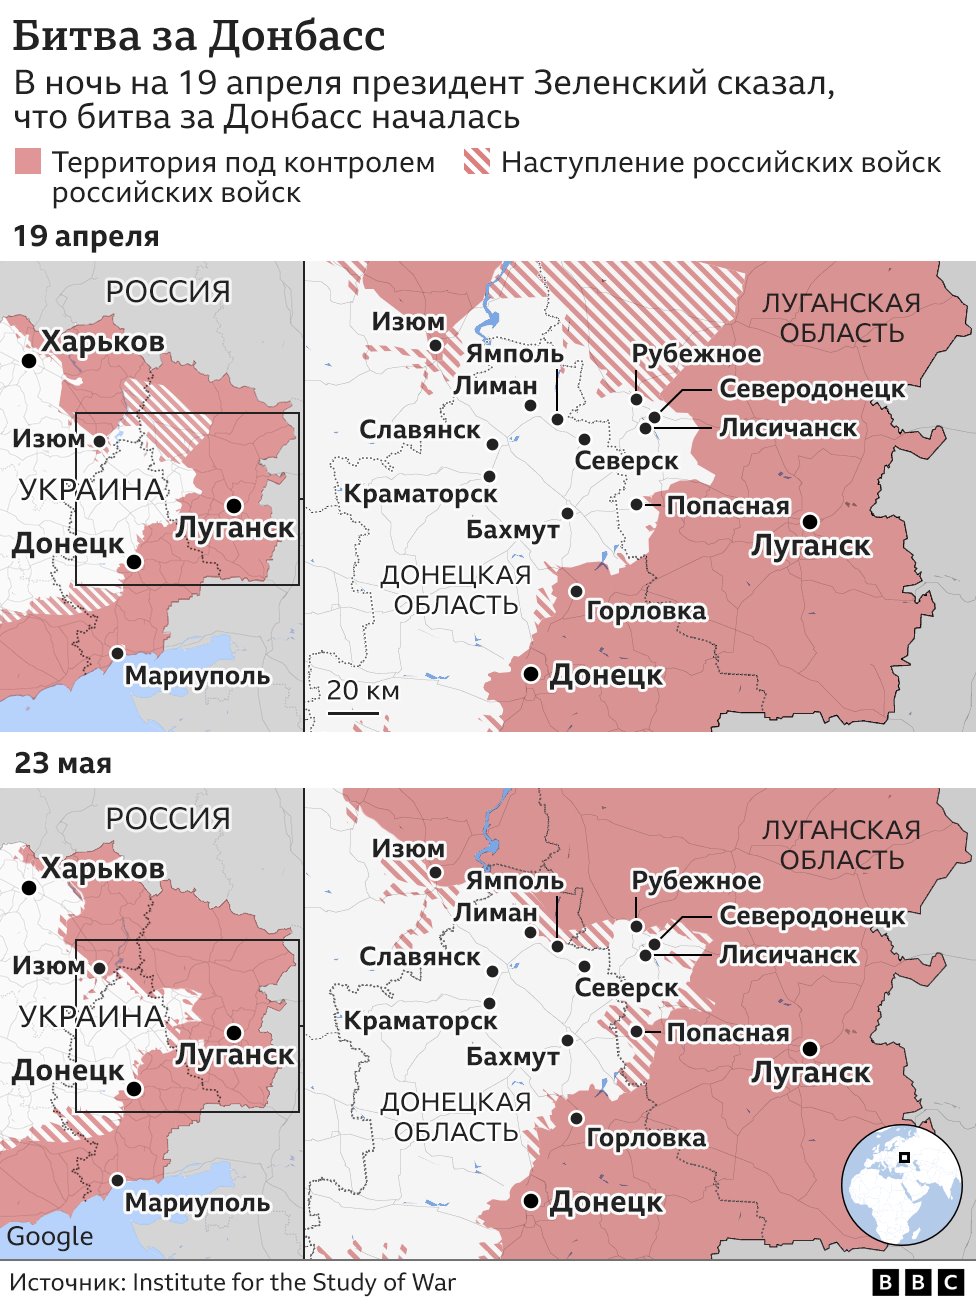 Карта битвы за Донбасс